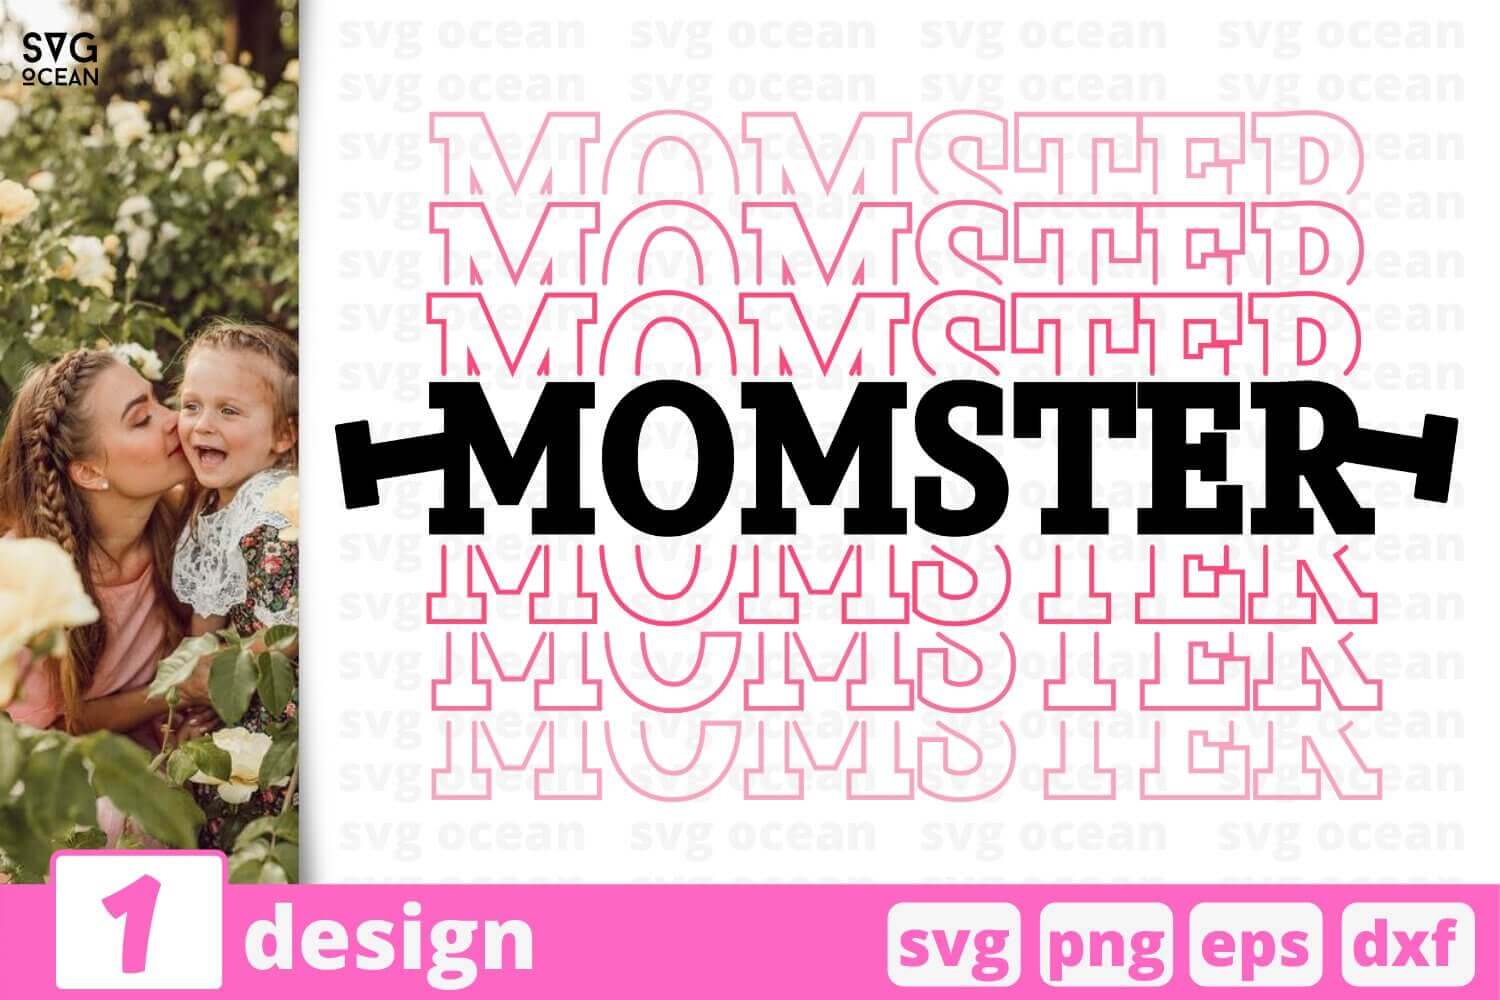 Momster Design in SVG, PNG, EPS, DXF.